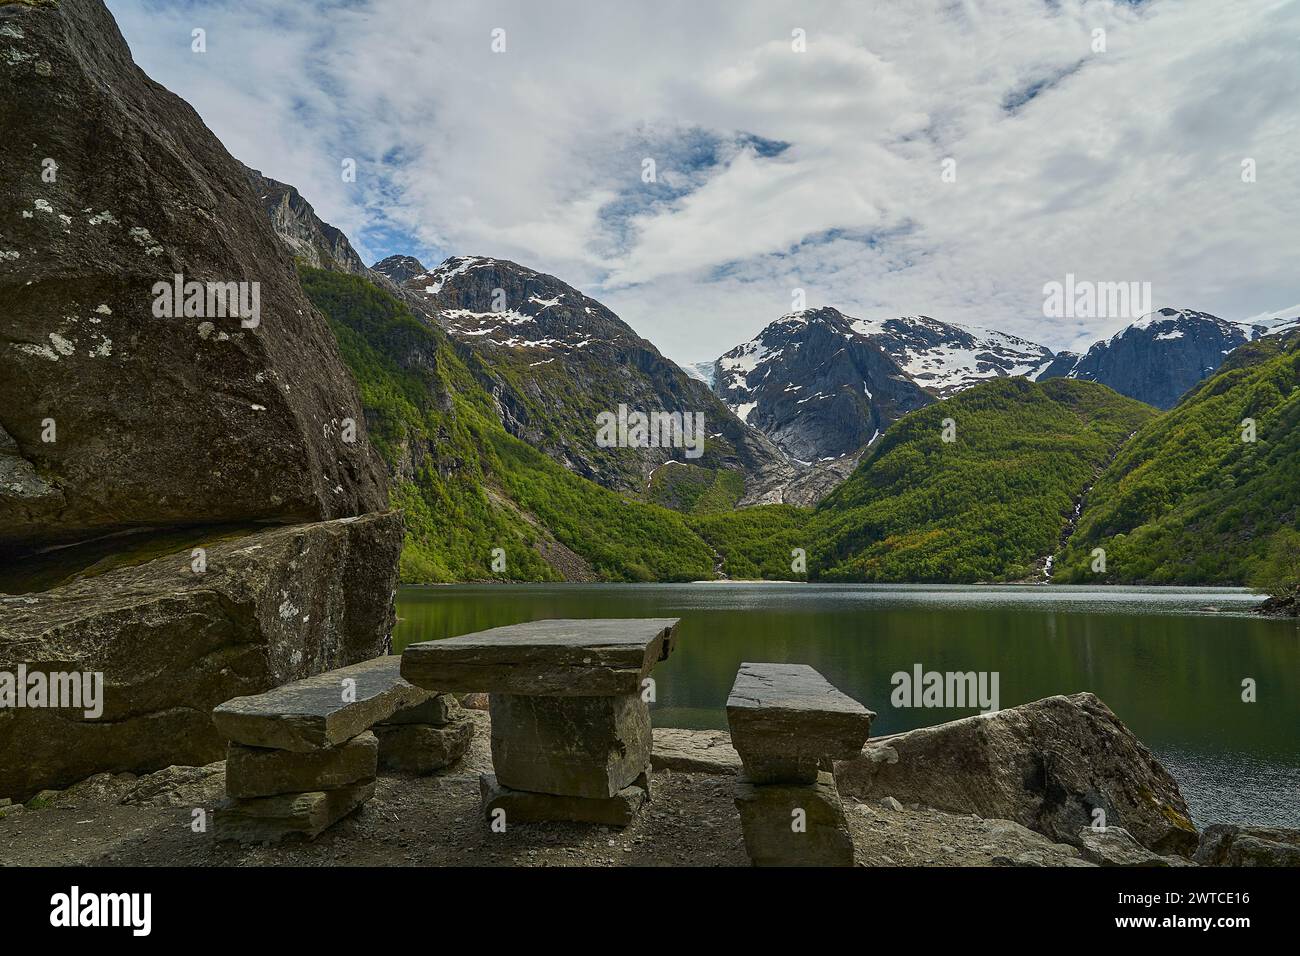 Sentier de randonnée vers le magnifique lac Bondhus Vatnet dans les hautes terres de Norvège, destination de voyage populaire pour les amoureux de la nature et les randonneurs. Banque D'Images